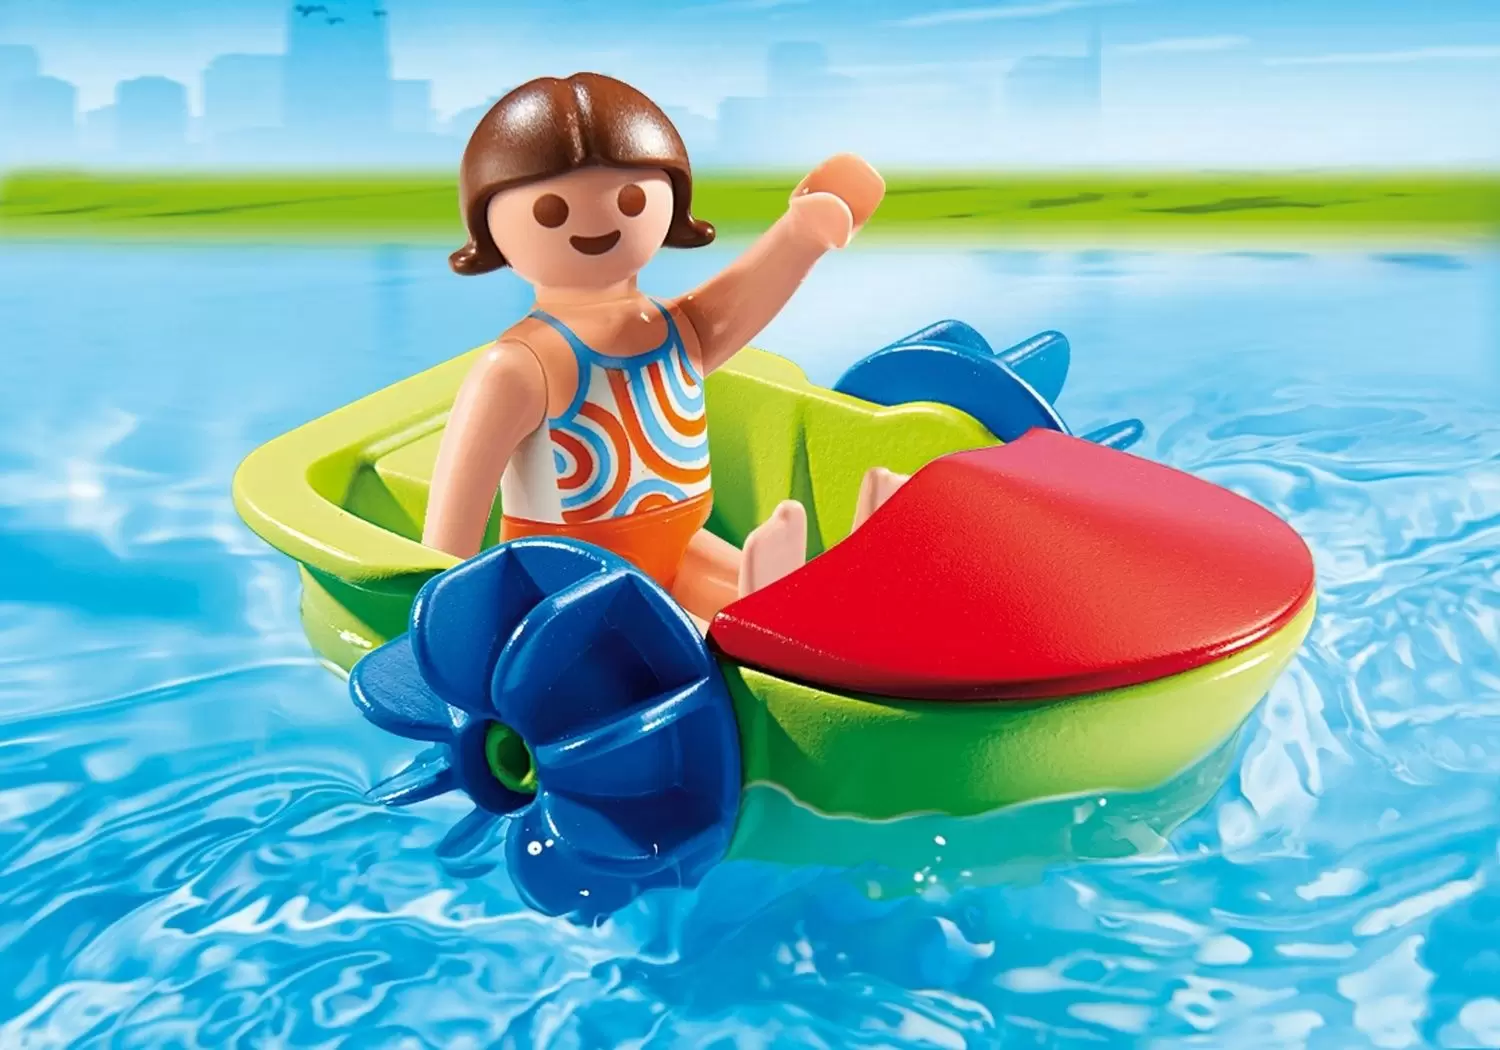 Playmobil en vacances - Enfant avec bateau à pédales